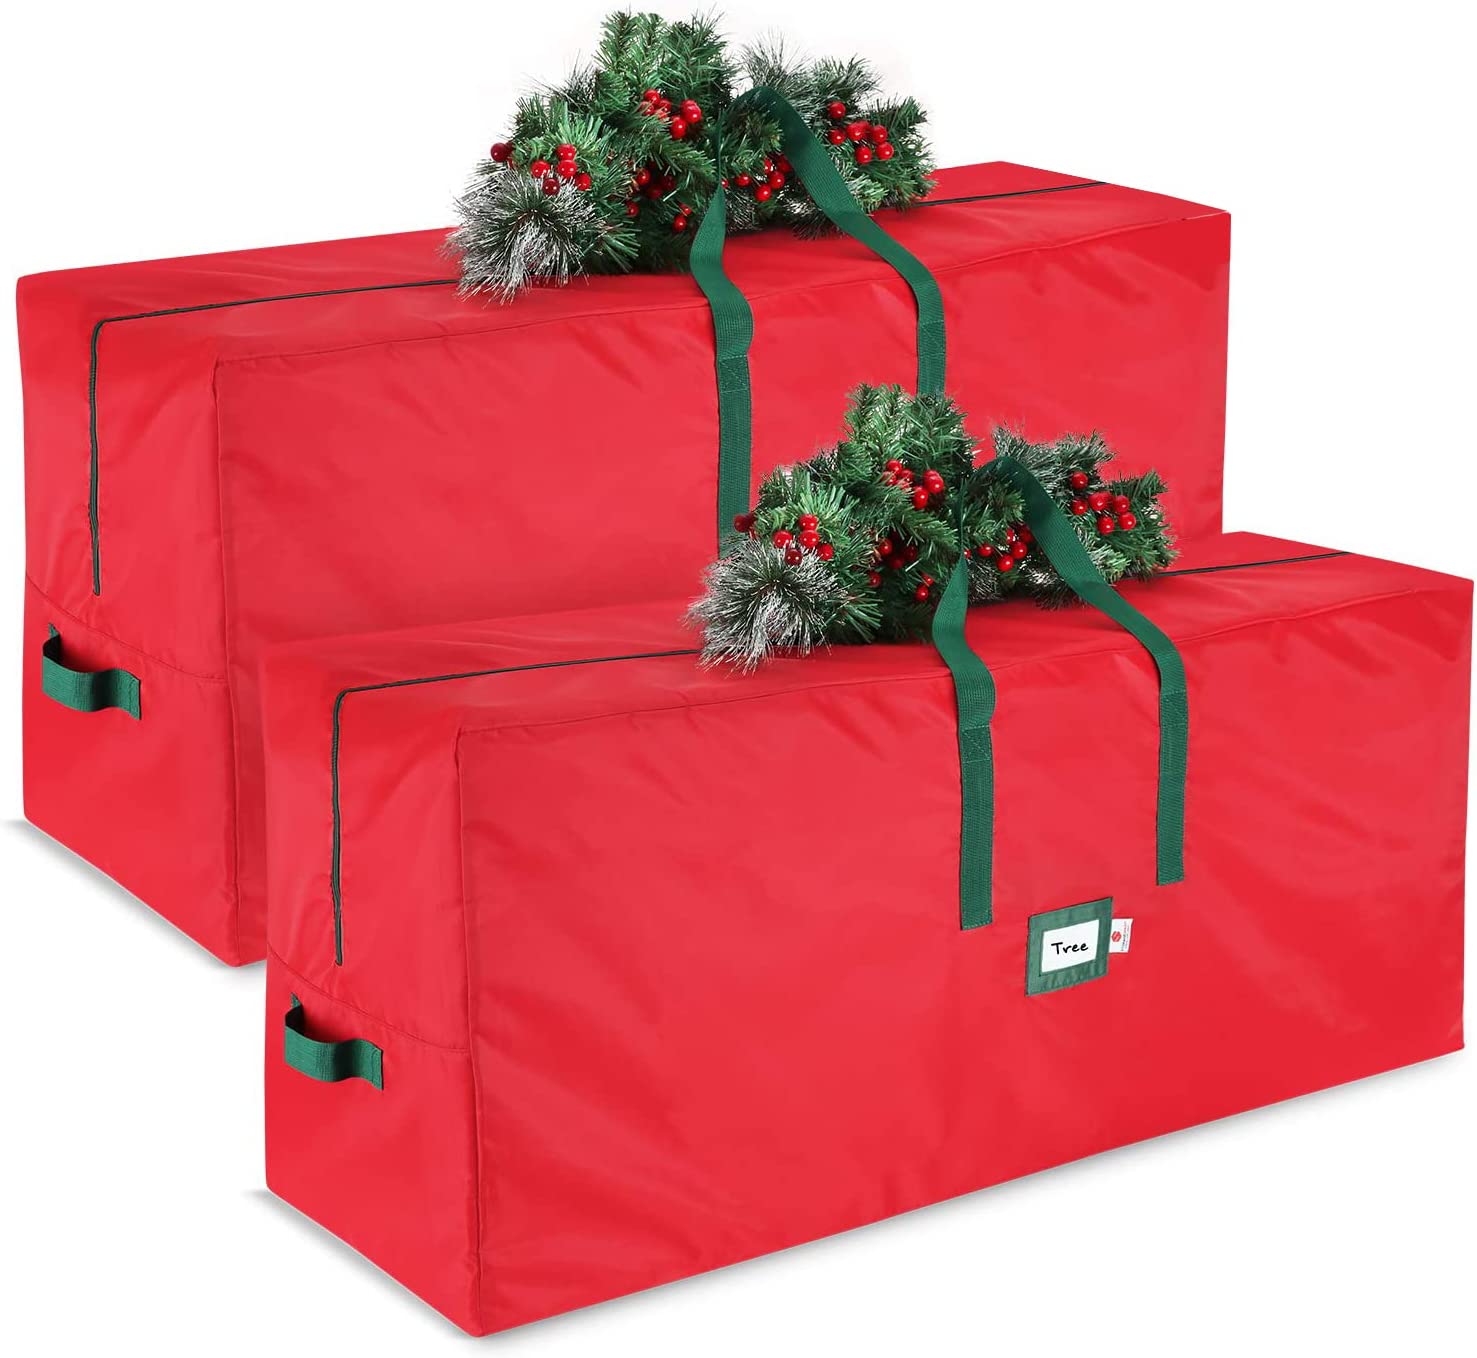  5. StoragMaid Christmas Tree Storage Bags 